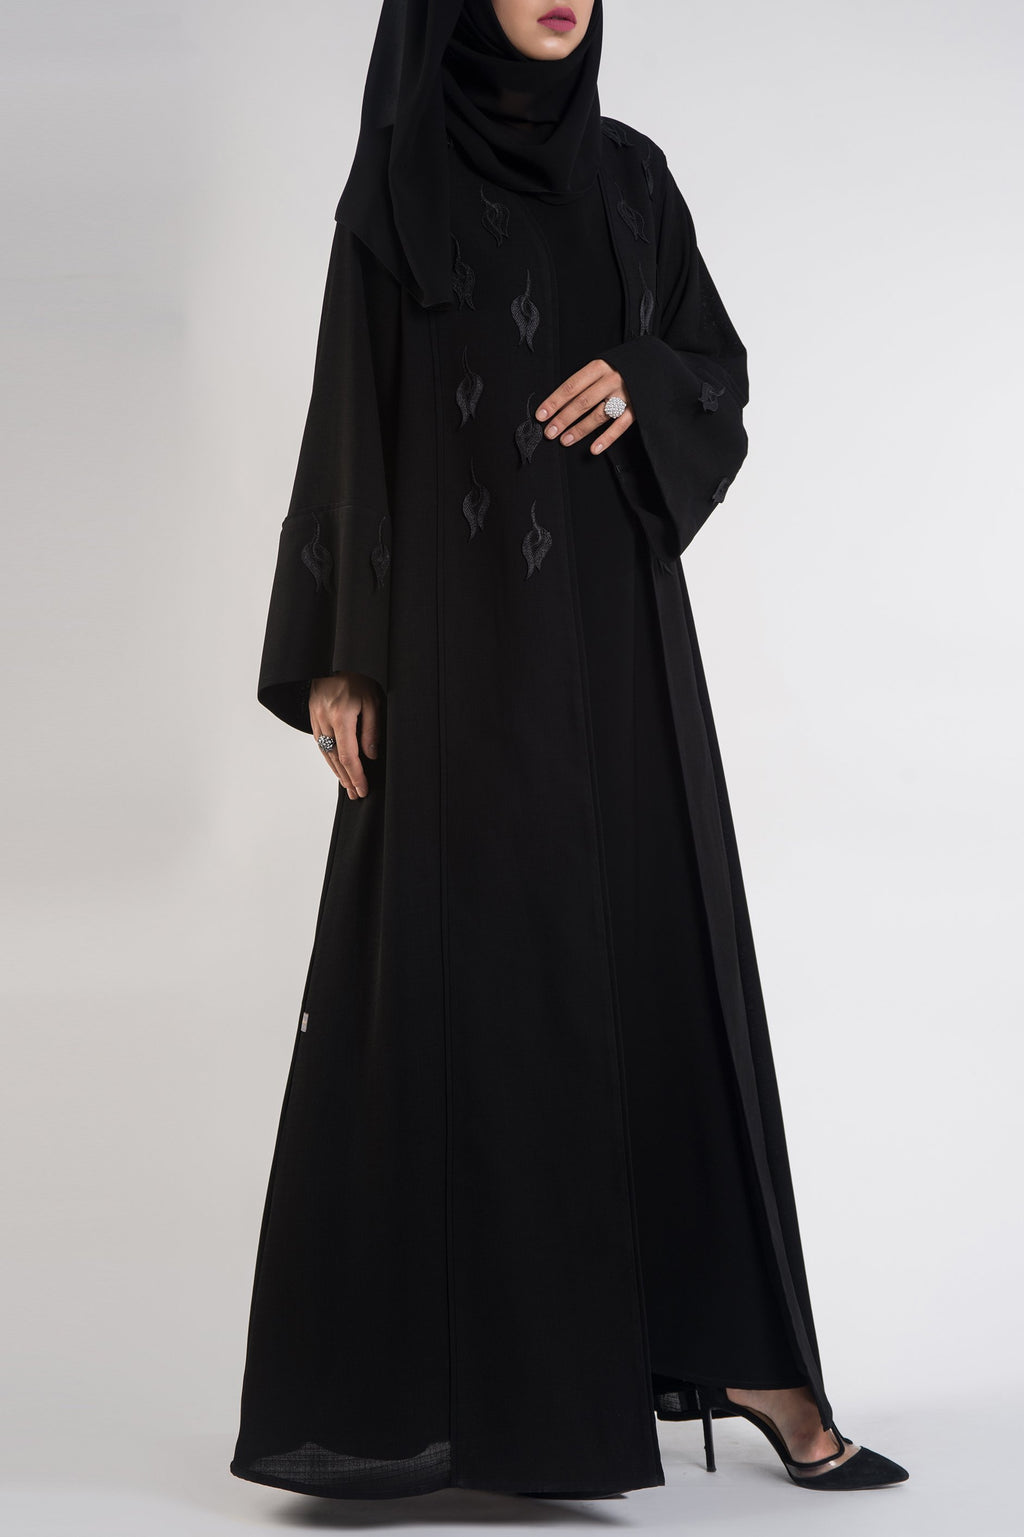 luxury branded black abayas - thowby - designer dubai abayas